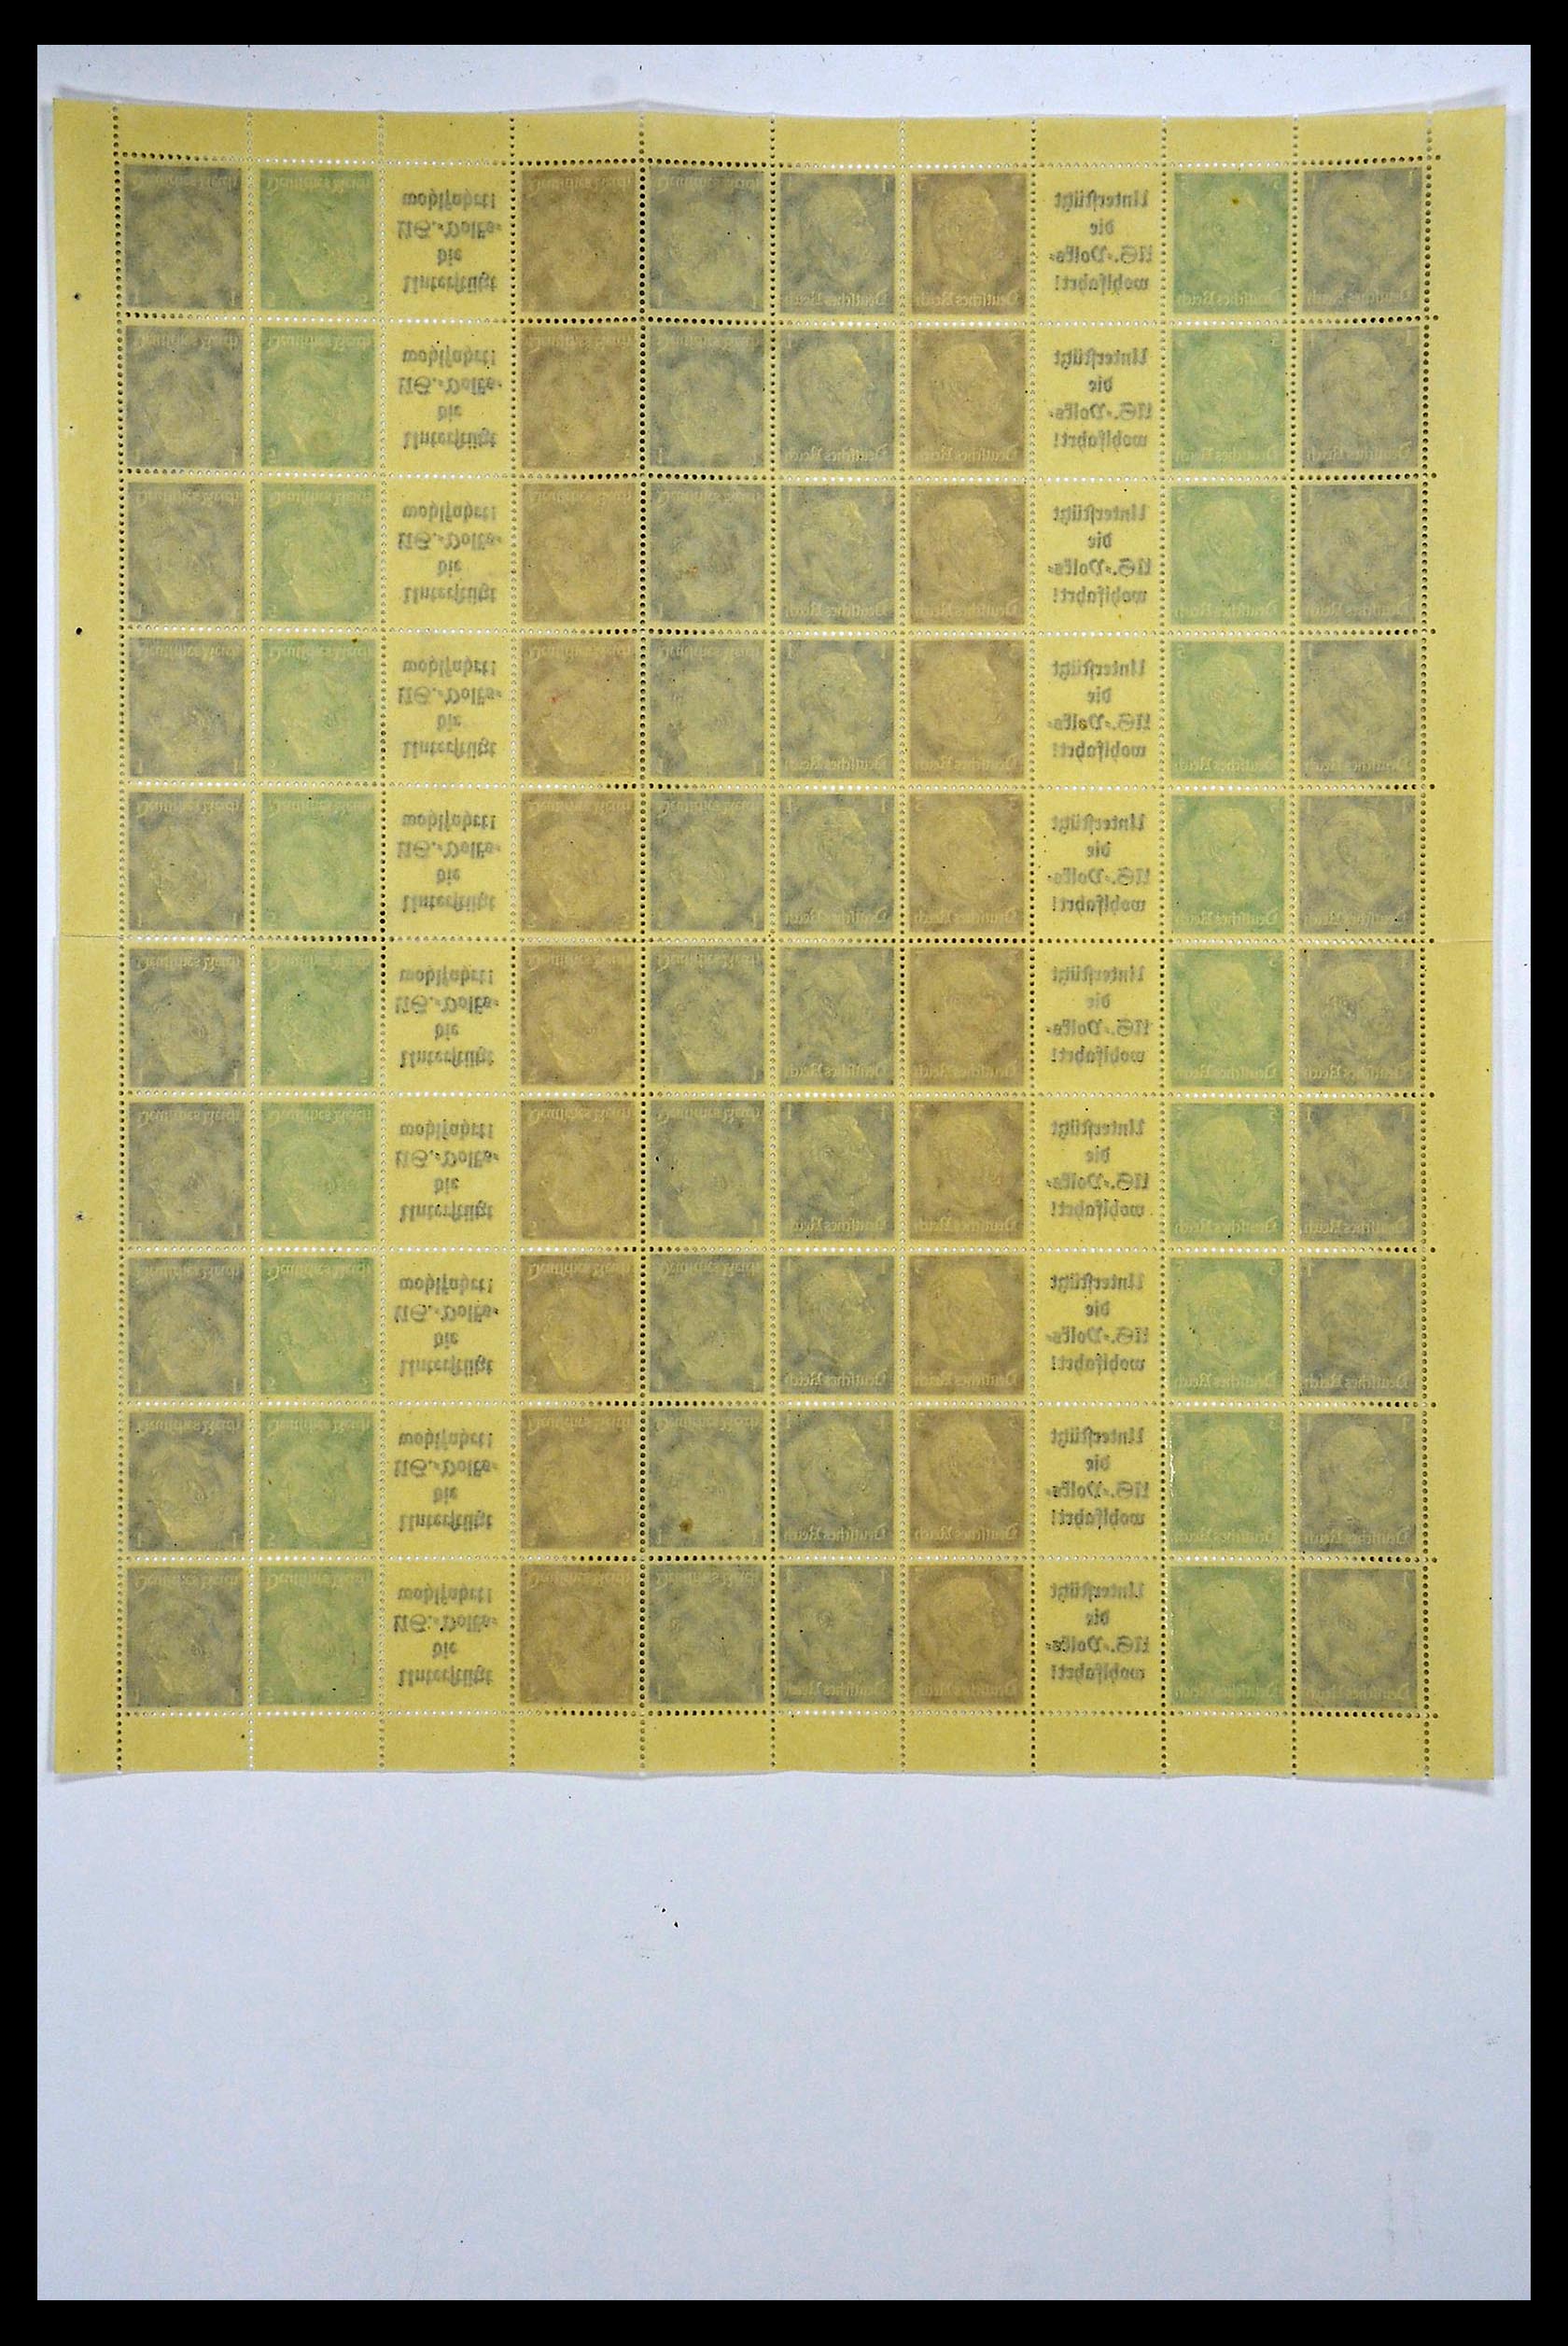 34164 052 - Stamp collection 34164 German Reich Markenheftchenbogen 1933-1942.